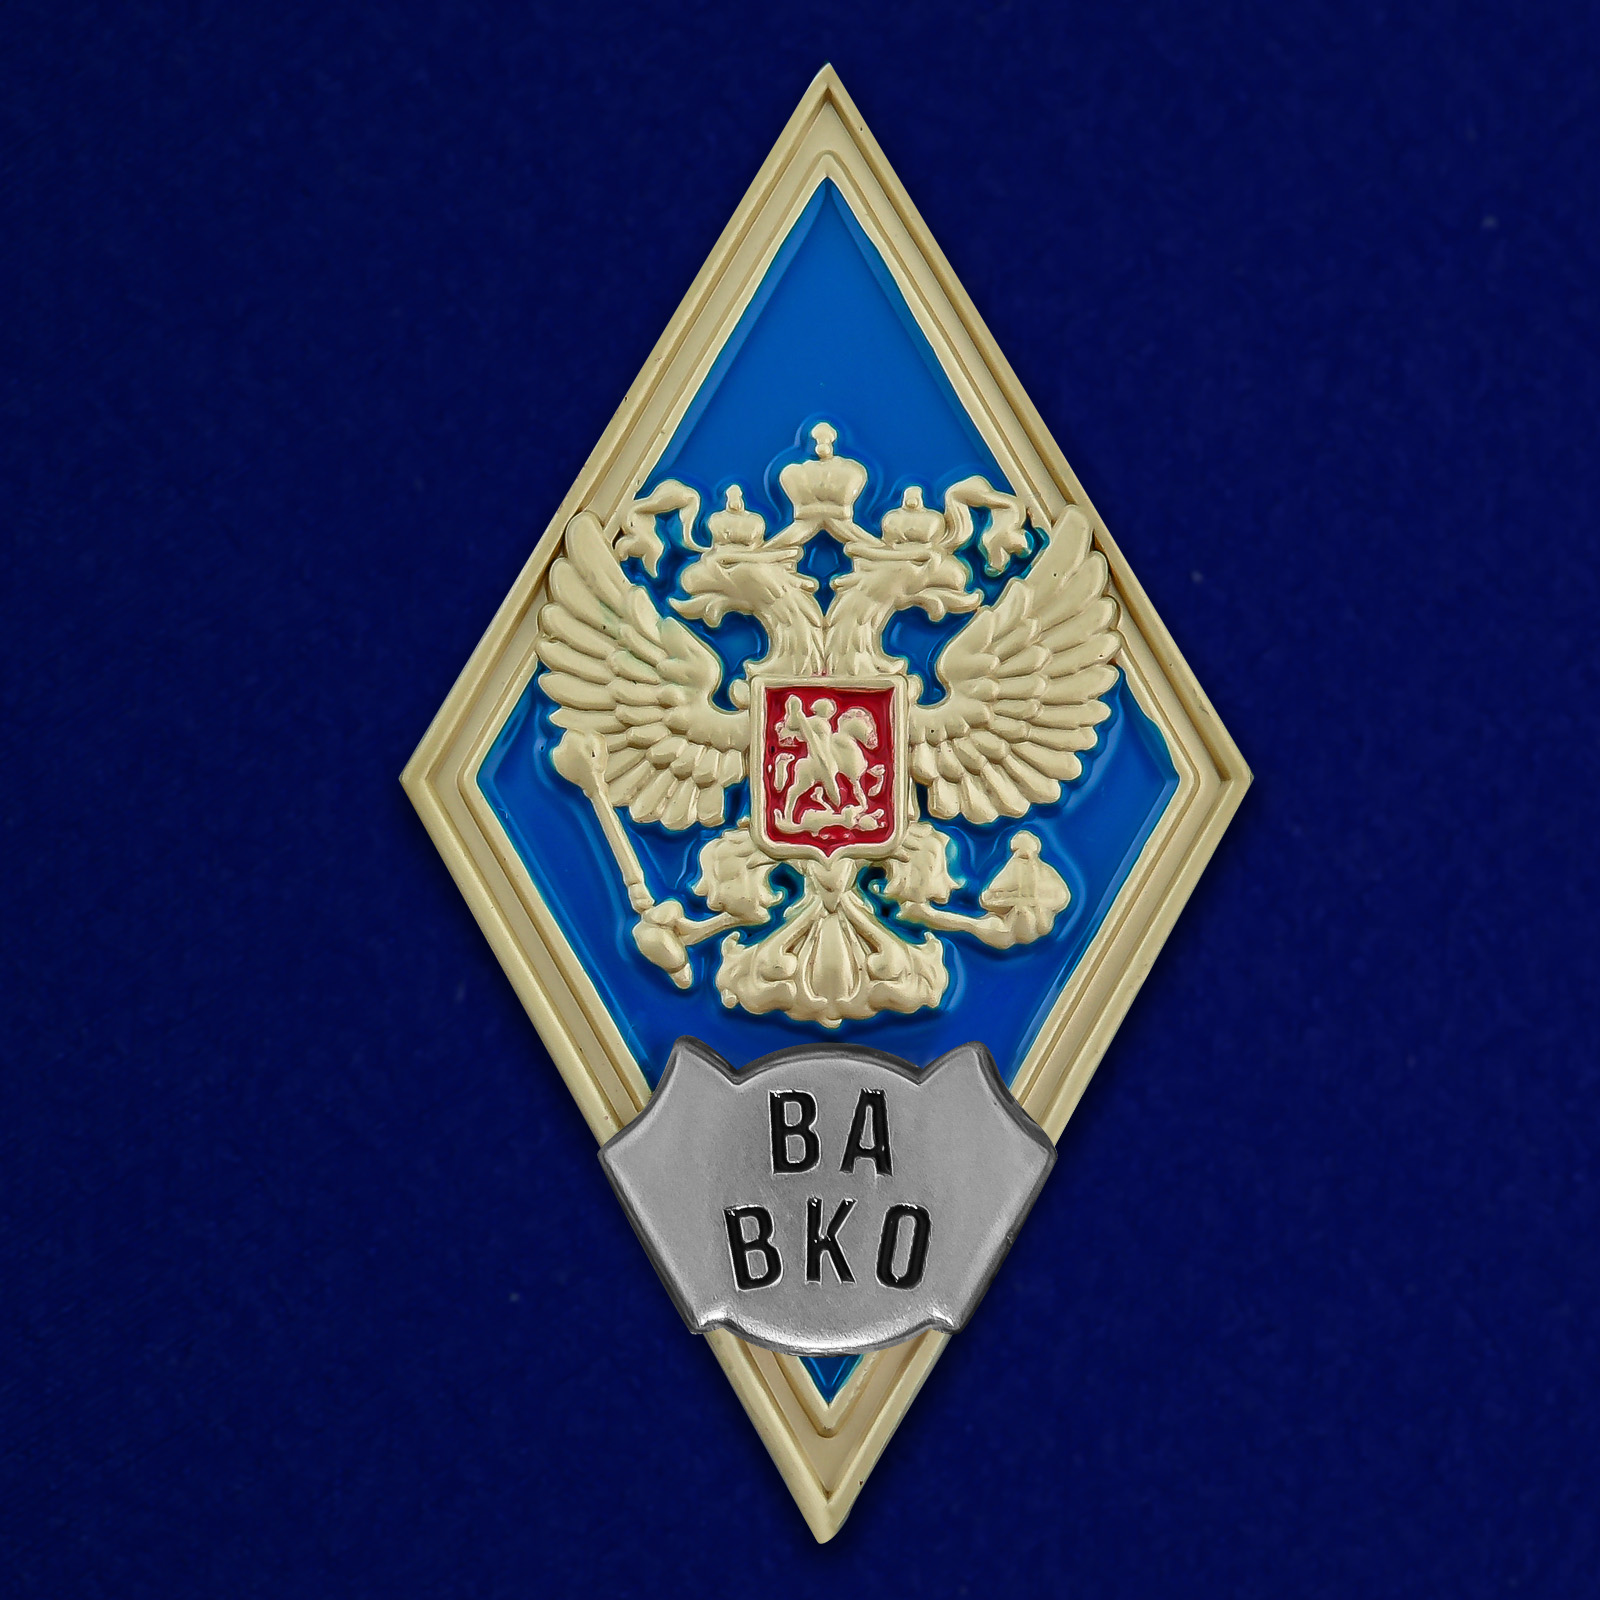 Купить знак об окончании Военной академии ВКО им. Г.К. Жукова выгодно